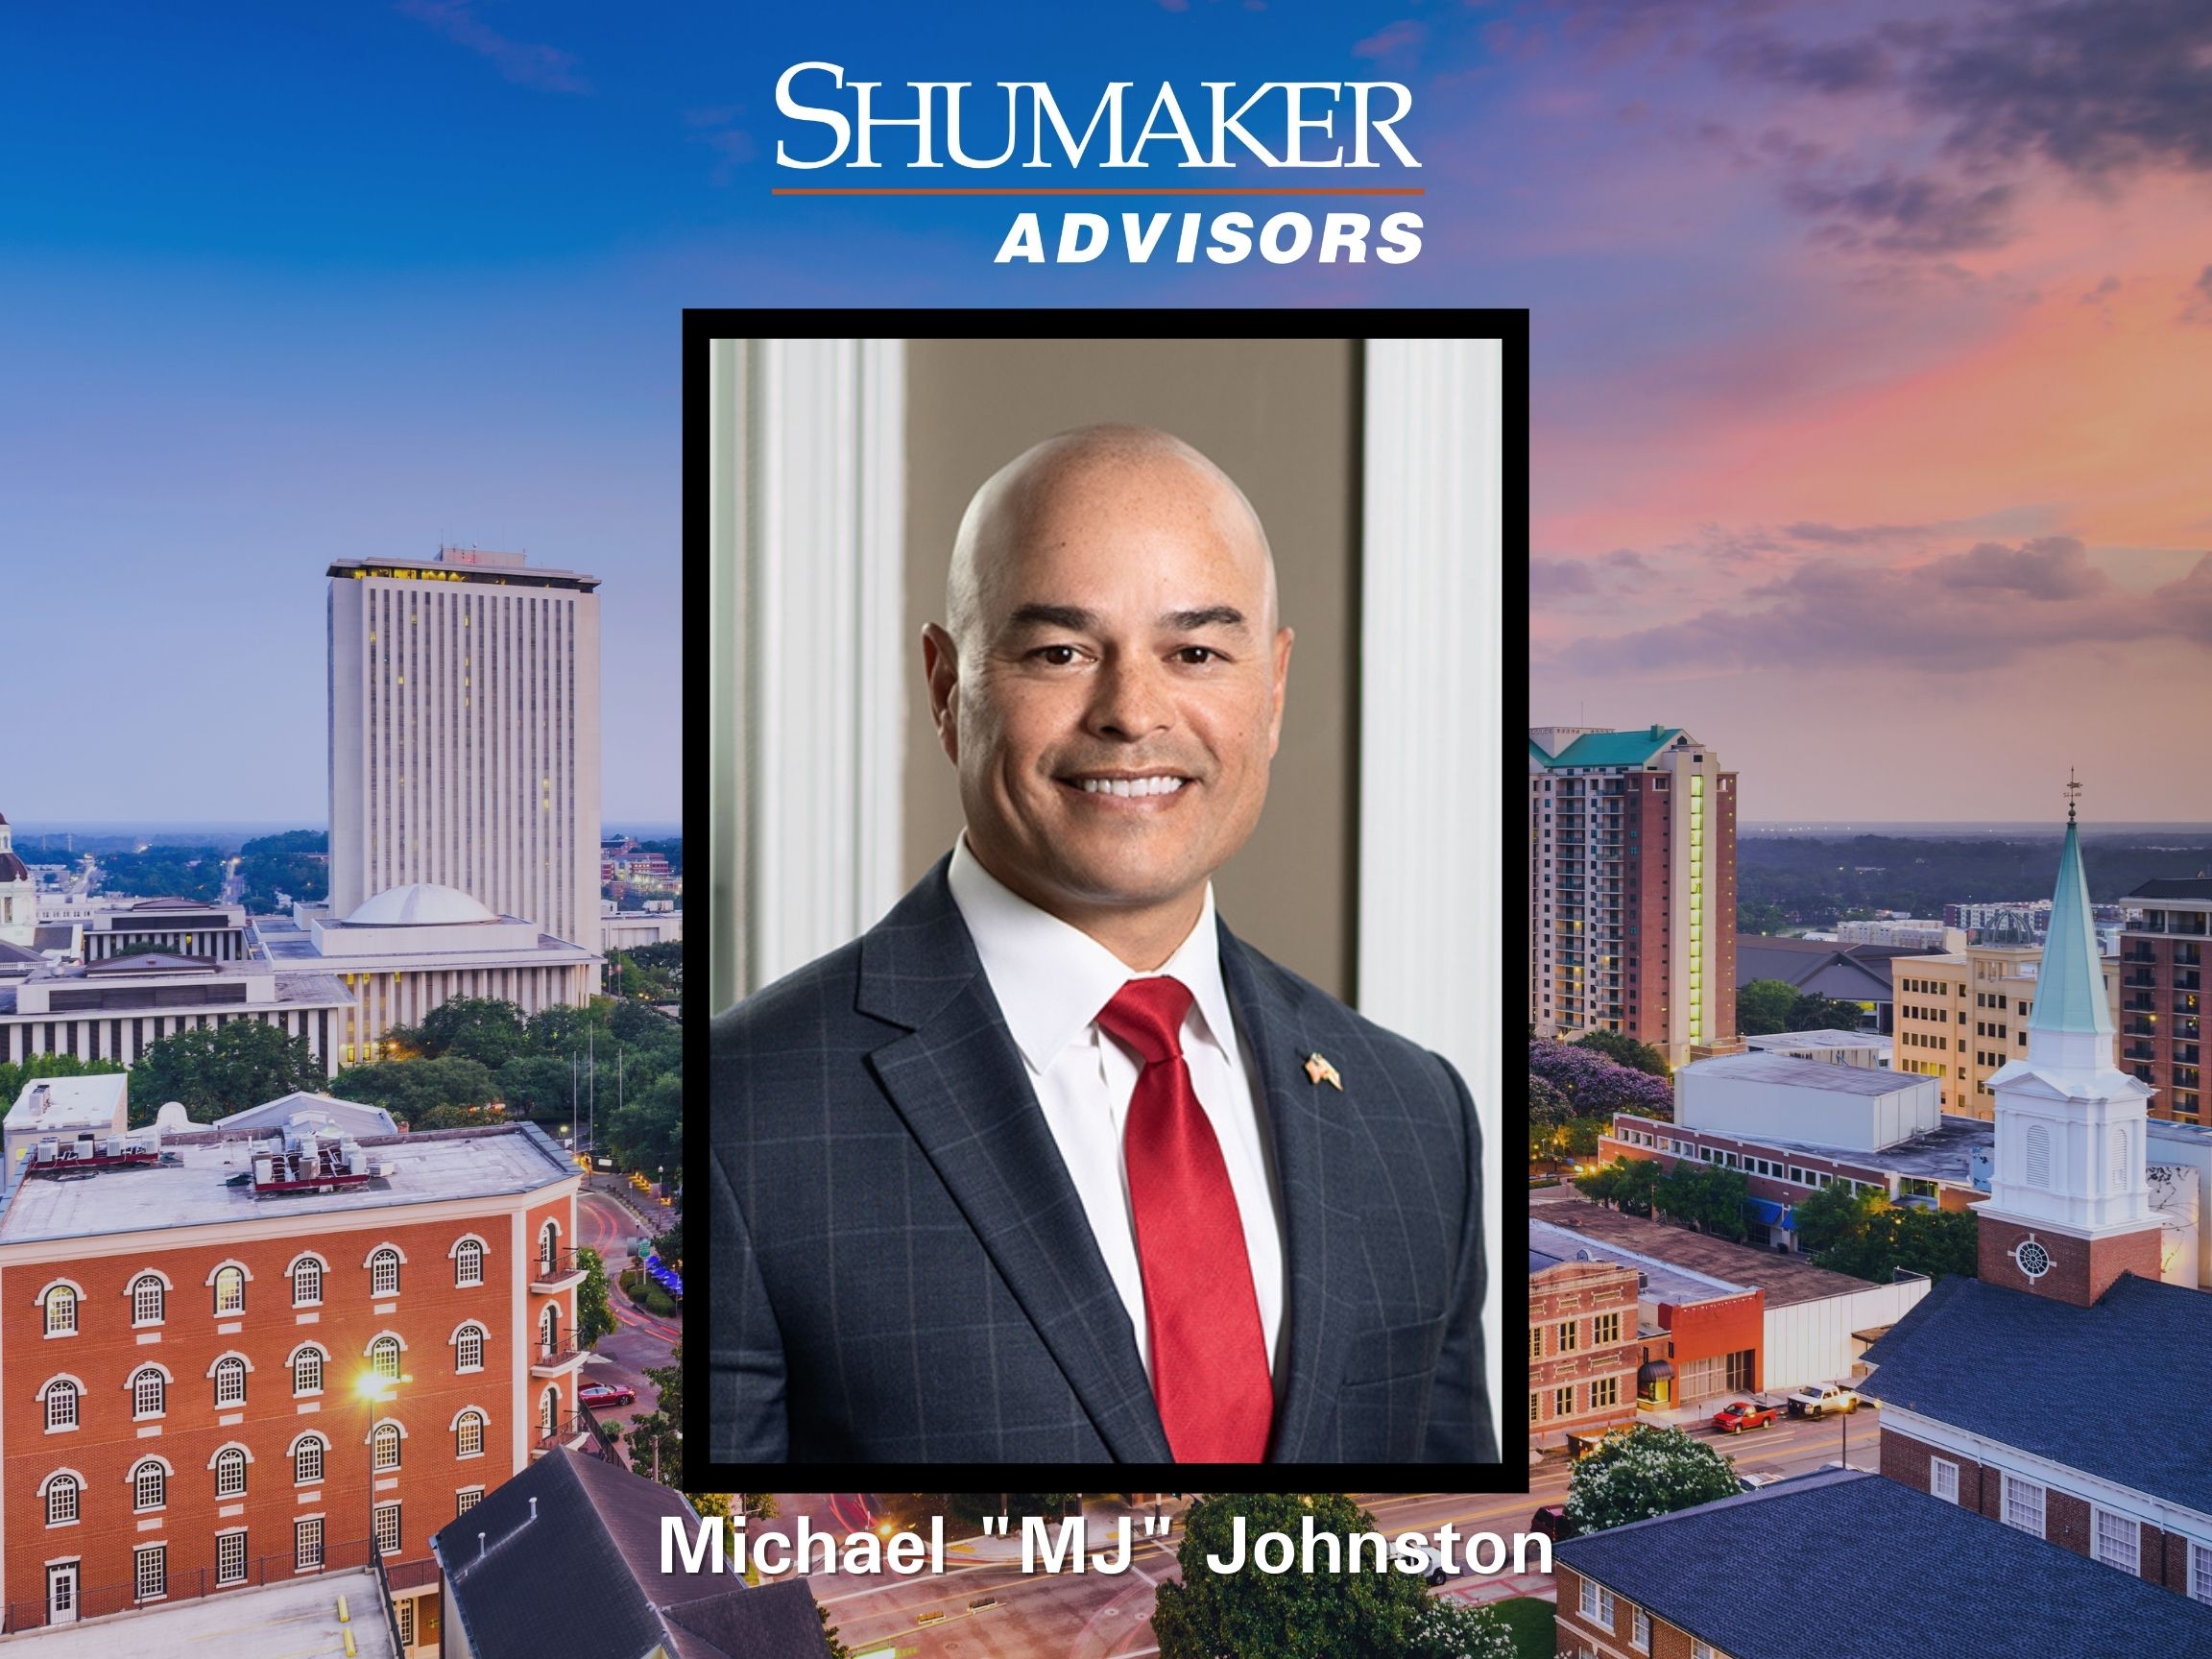 Former Florida Business Regulator Michael Johnston Joins Shumaker Advisors 